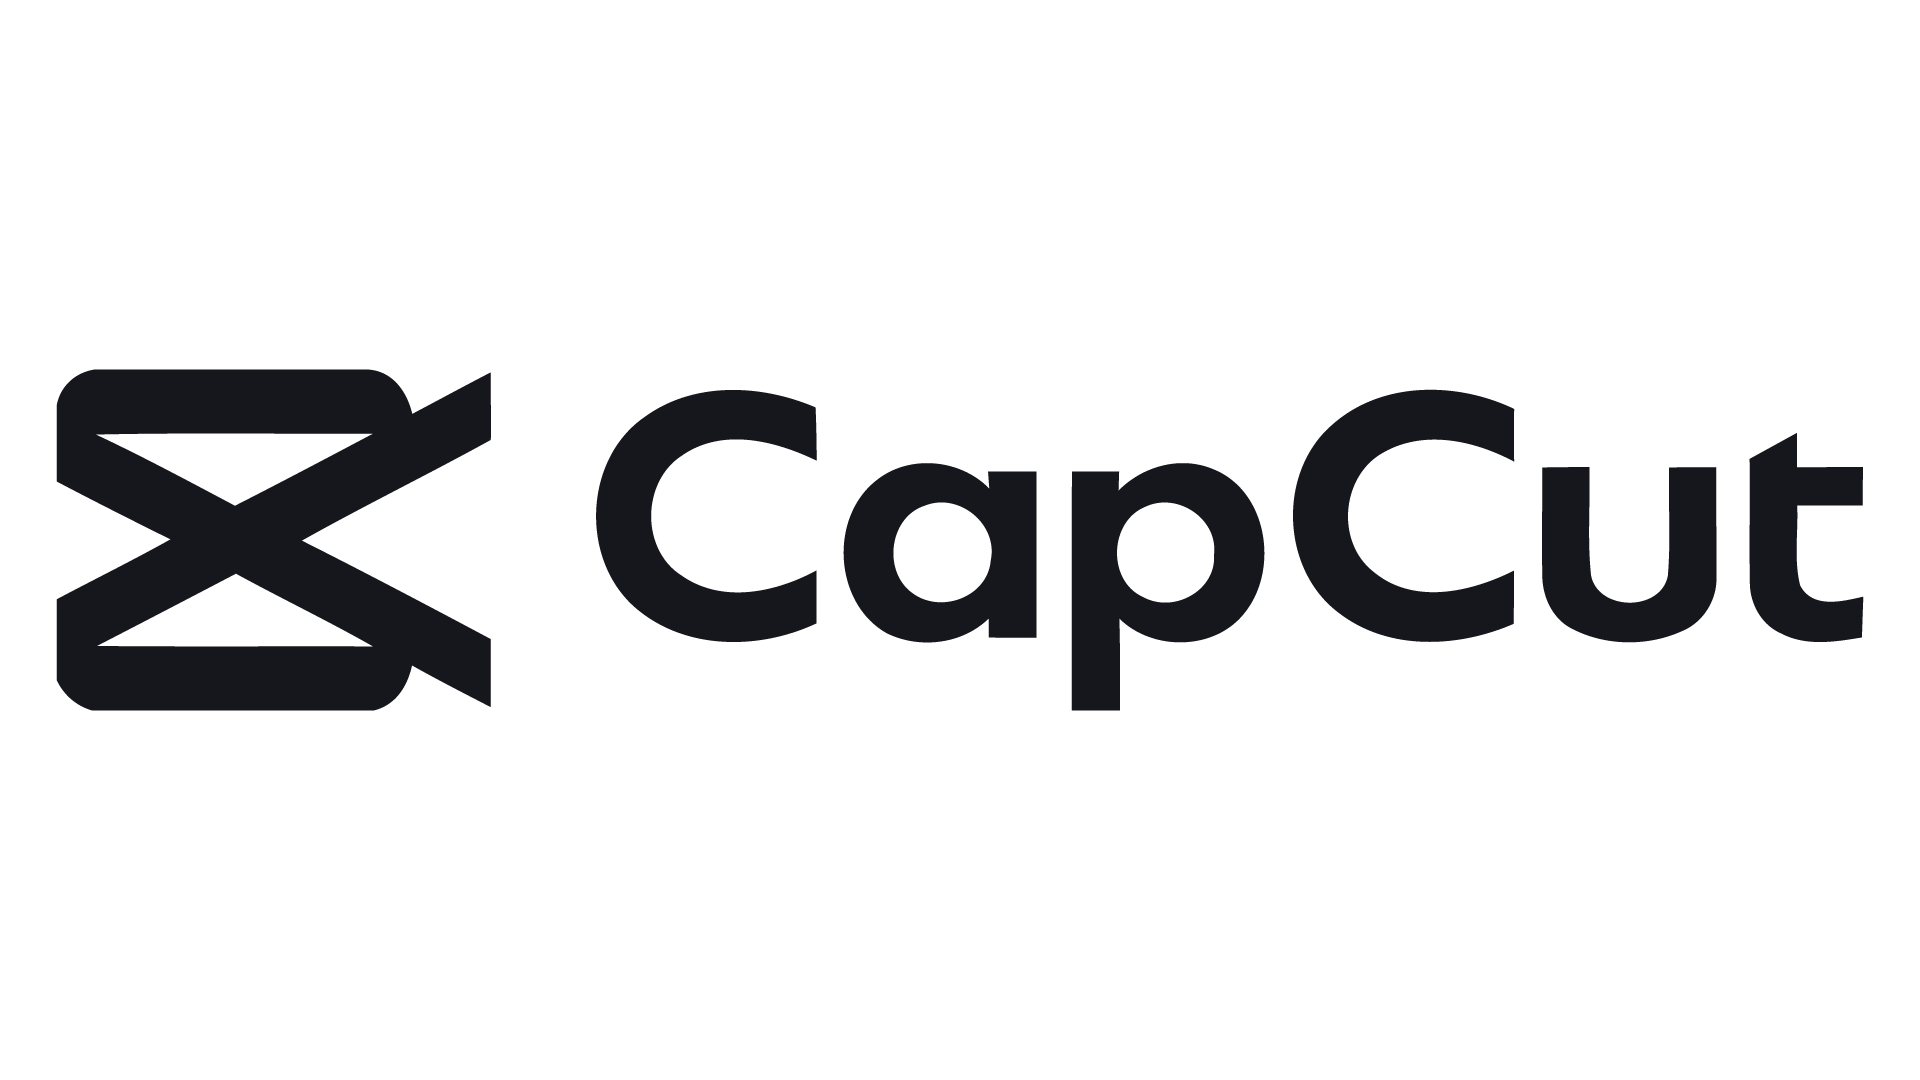 Capcut temple. CAPCUT логотип. Значле CAPCUT. Приложение CAPCUT. Значок CAPCUT PNG.